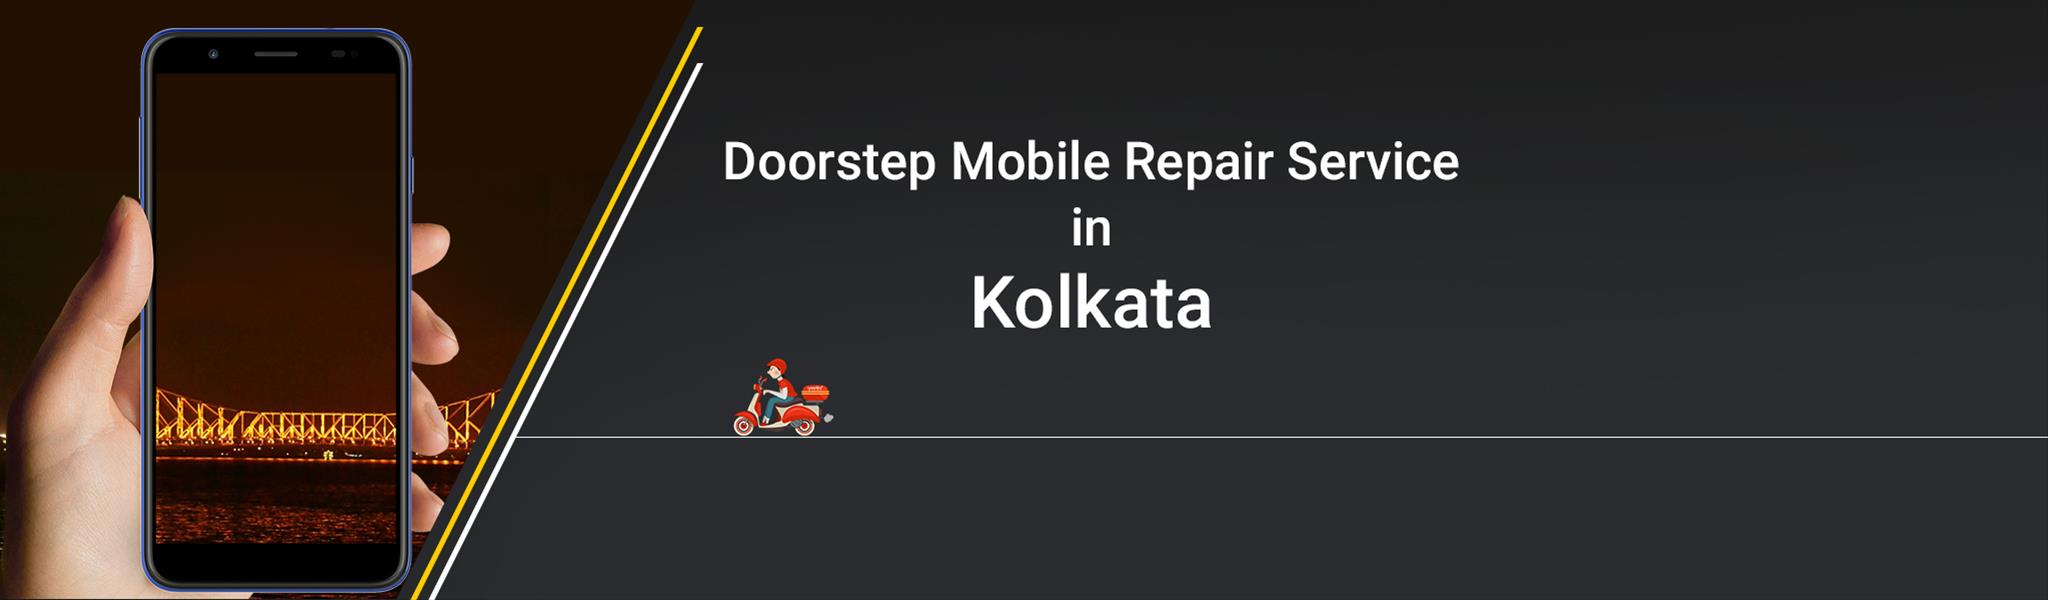 mobile-repair-in-kolkata.jpg